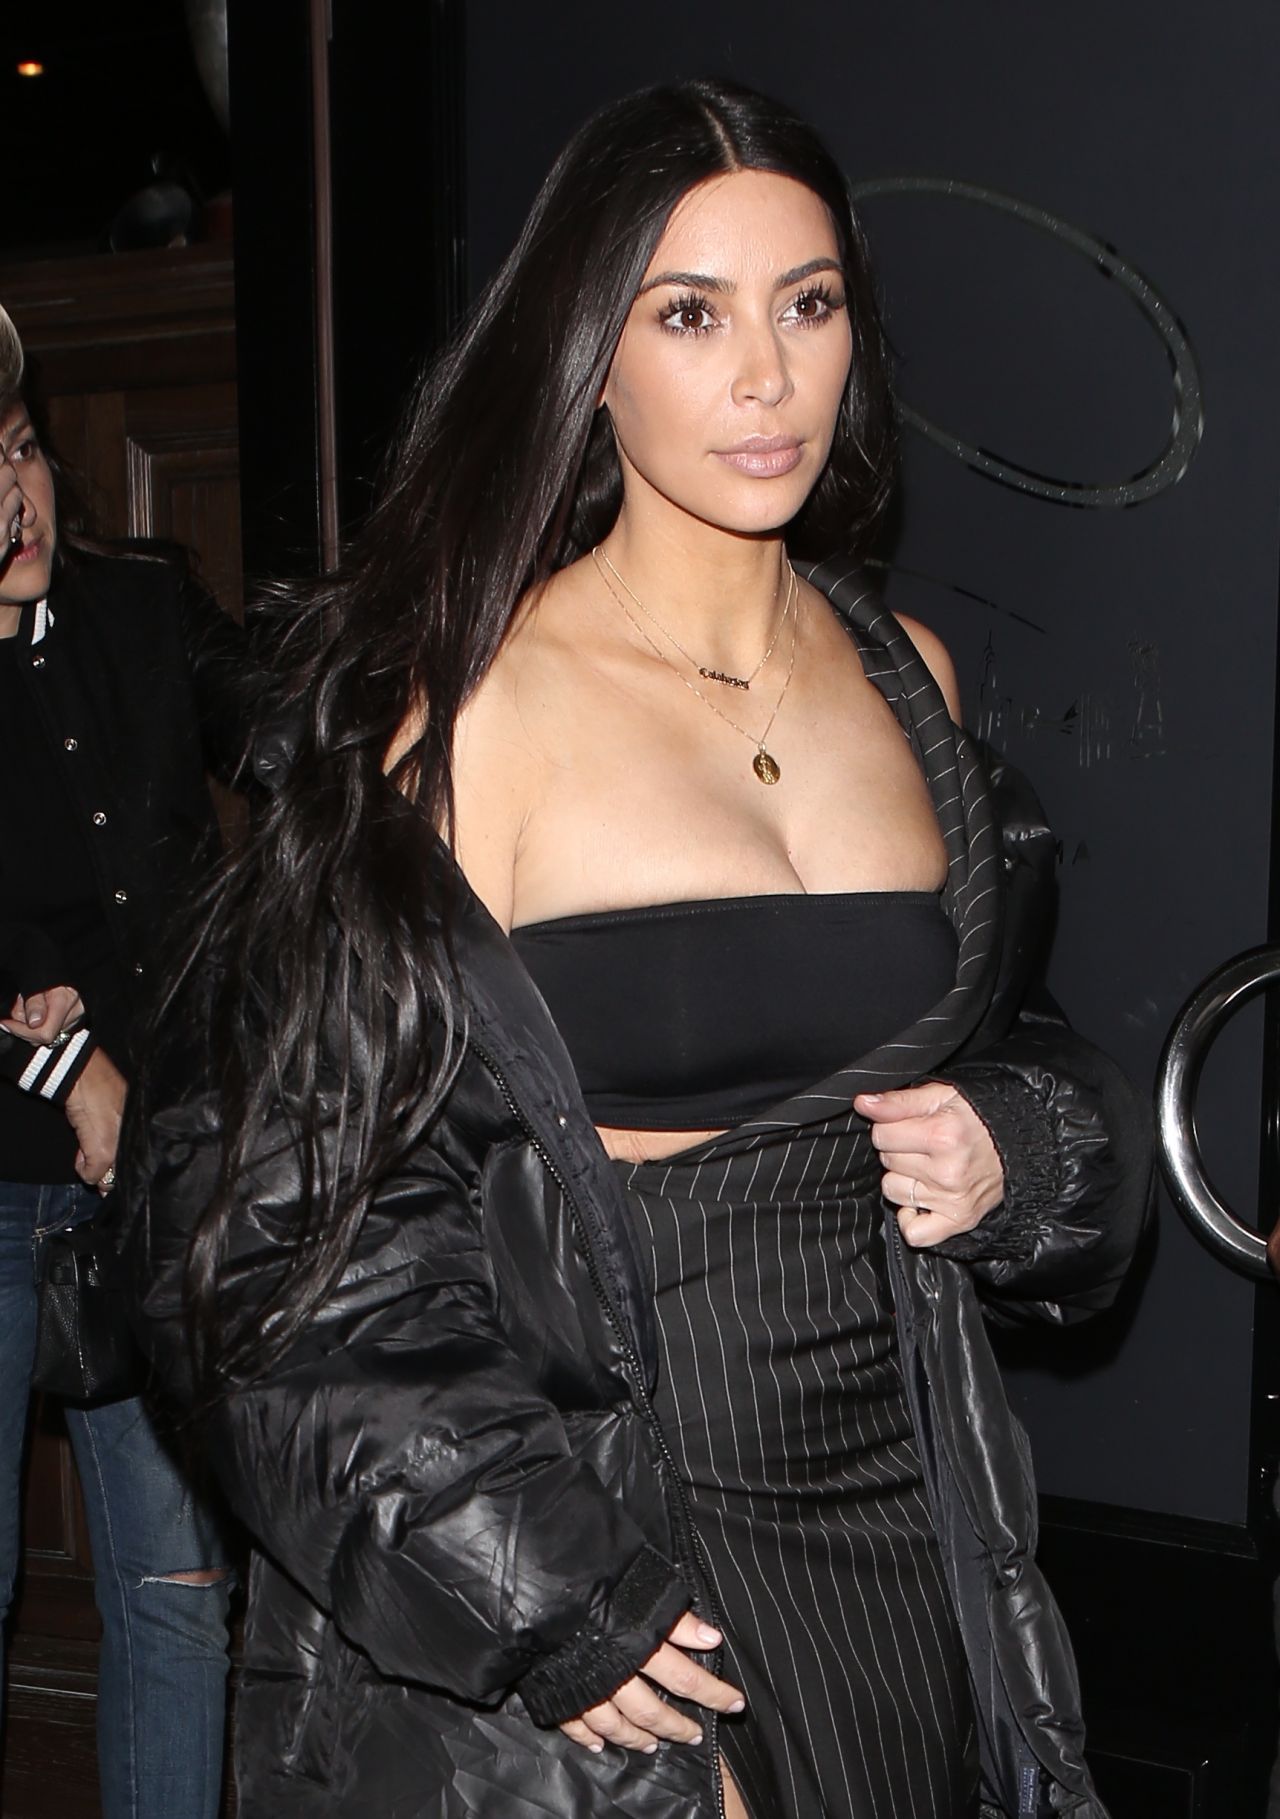 Kim Kardashian Craigs Restaurant June 22, 2014 – Star Style